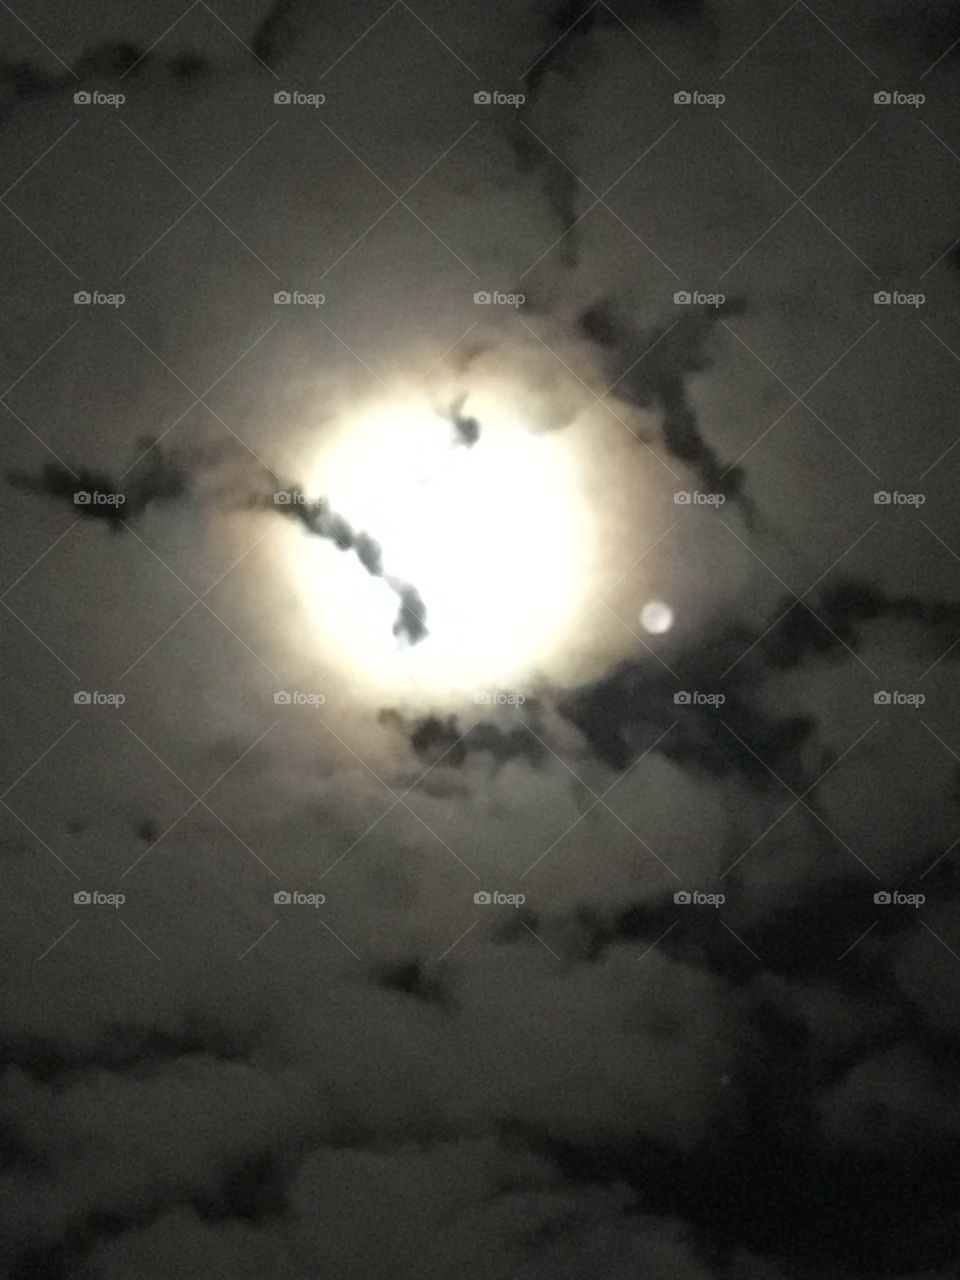 Full moon/dog moon